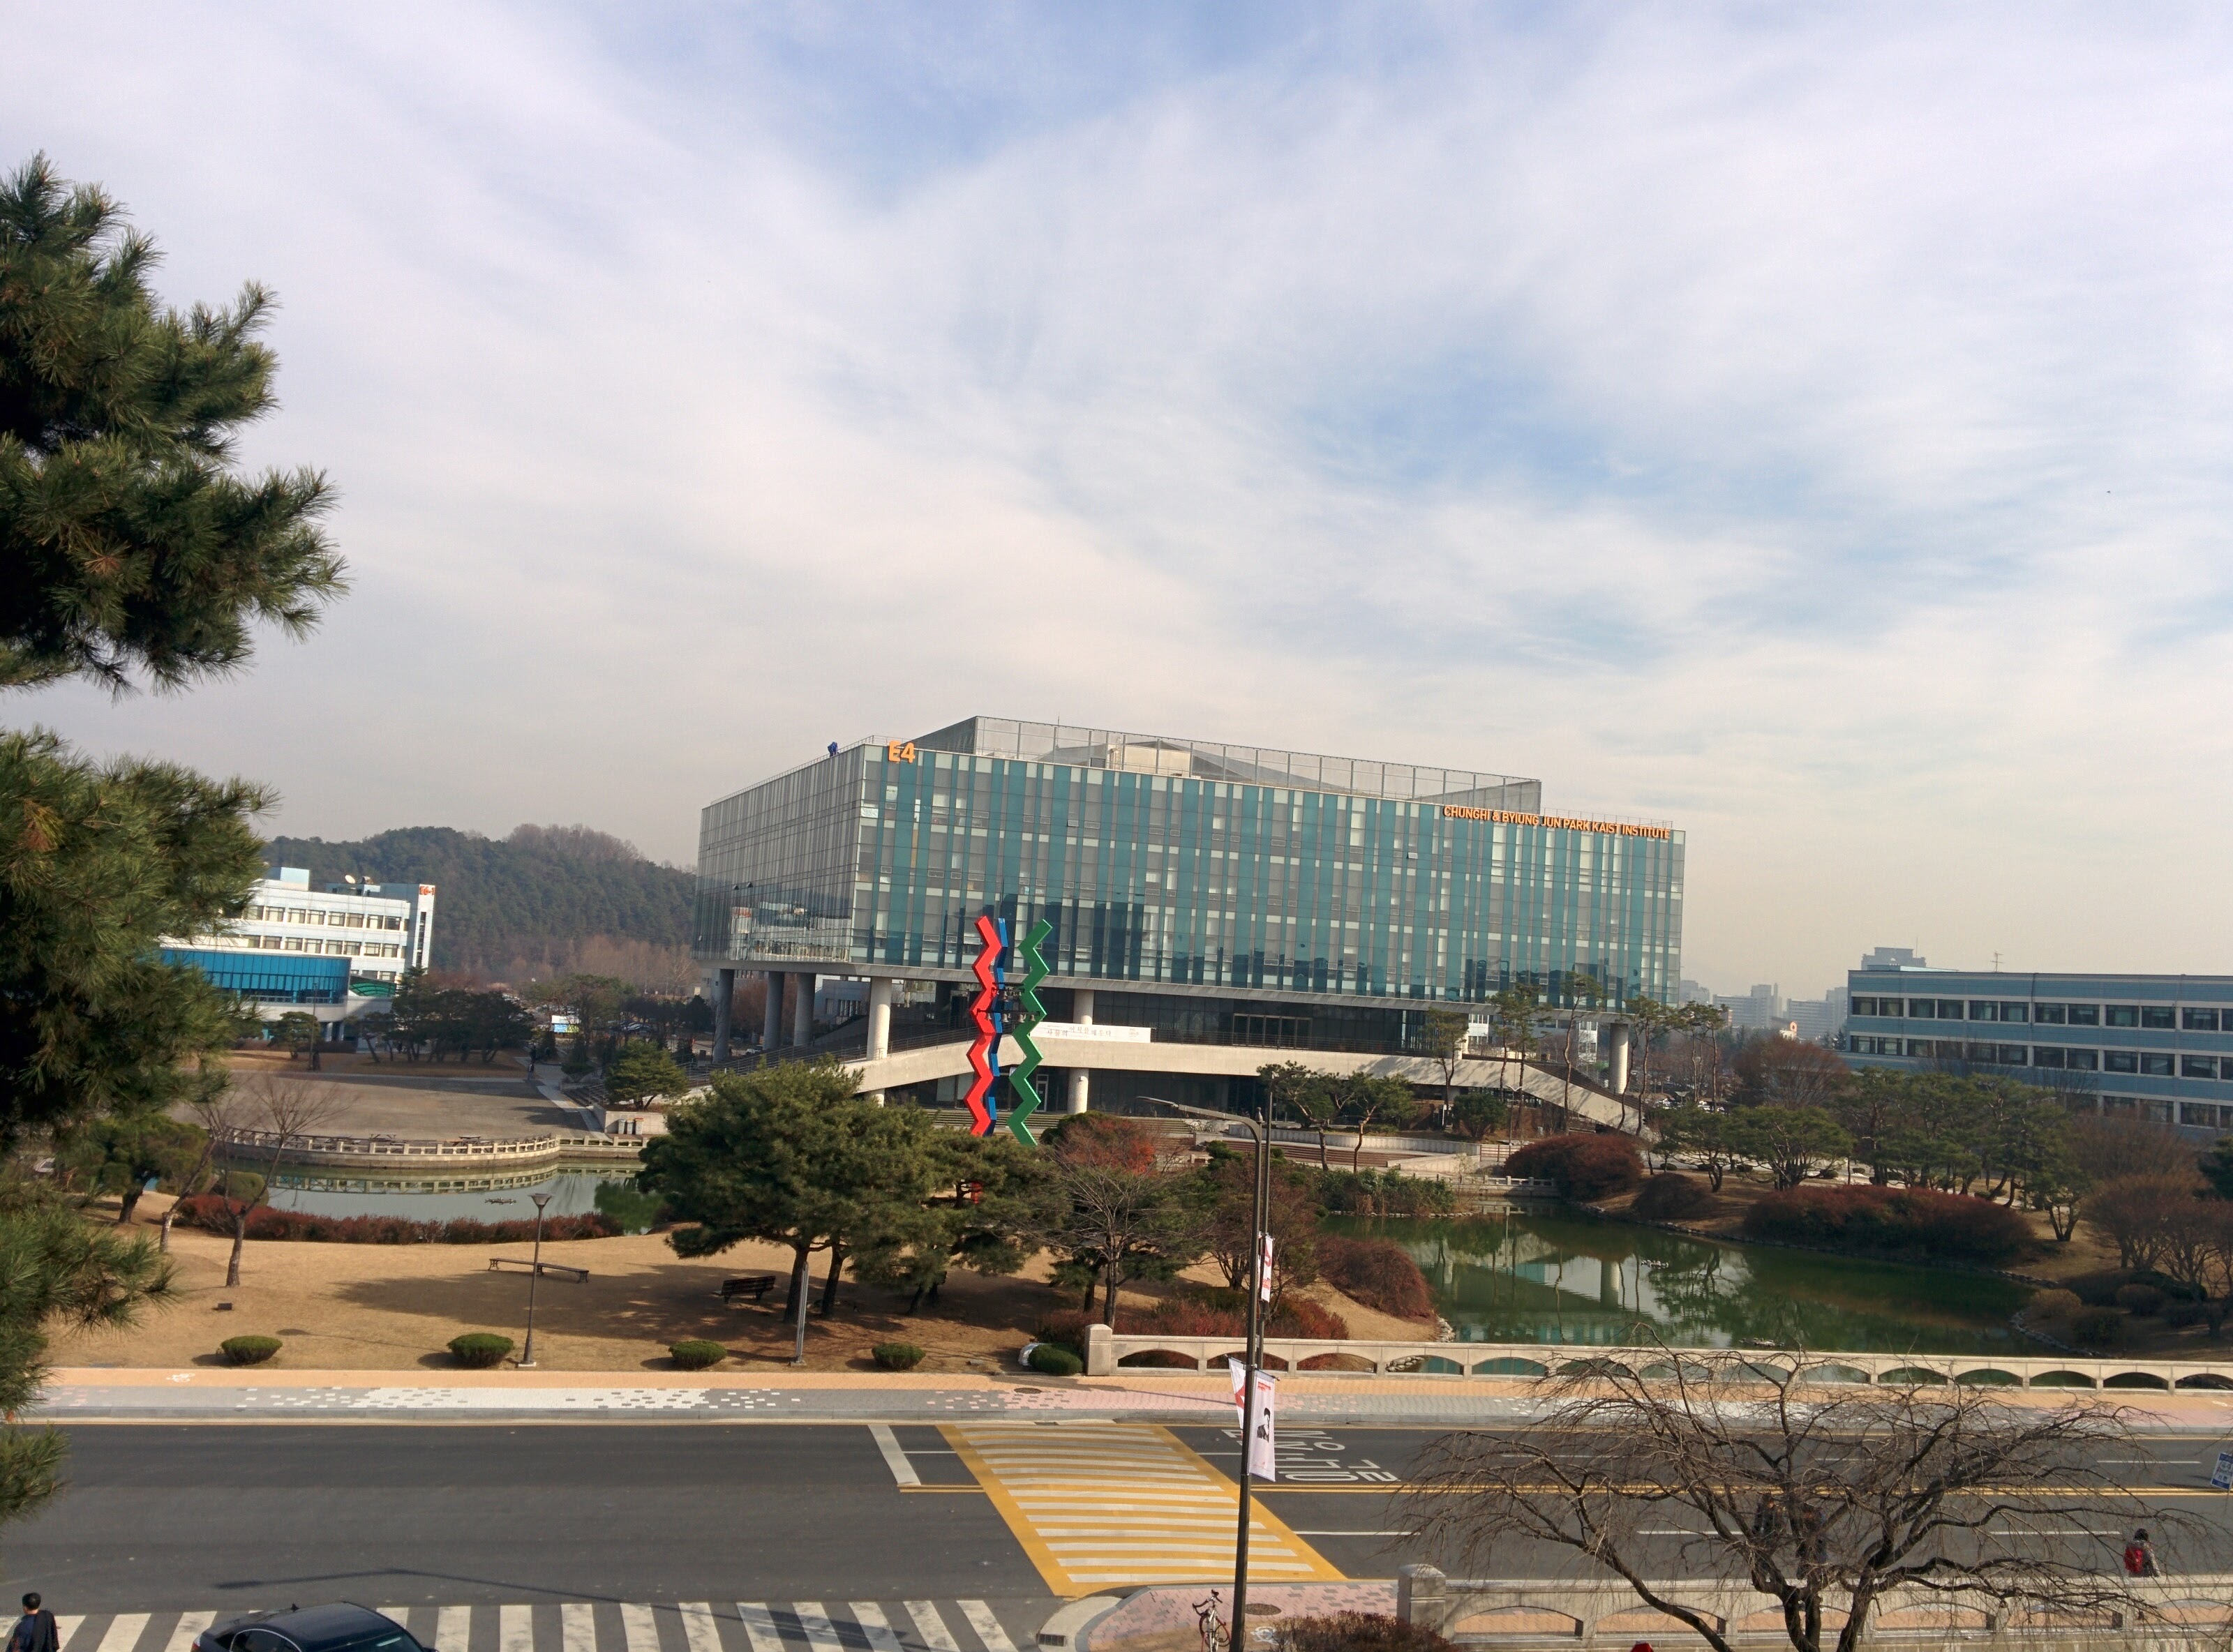 IMG_20151209_122757.jpg 어은동산에서 바라본 한국과학기술원 오리연못 풍경